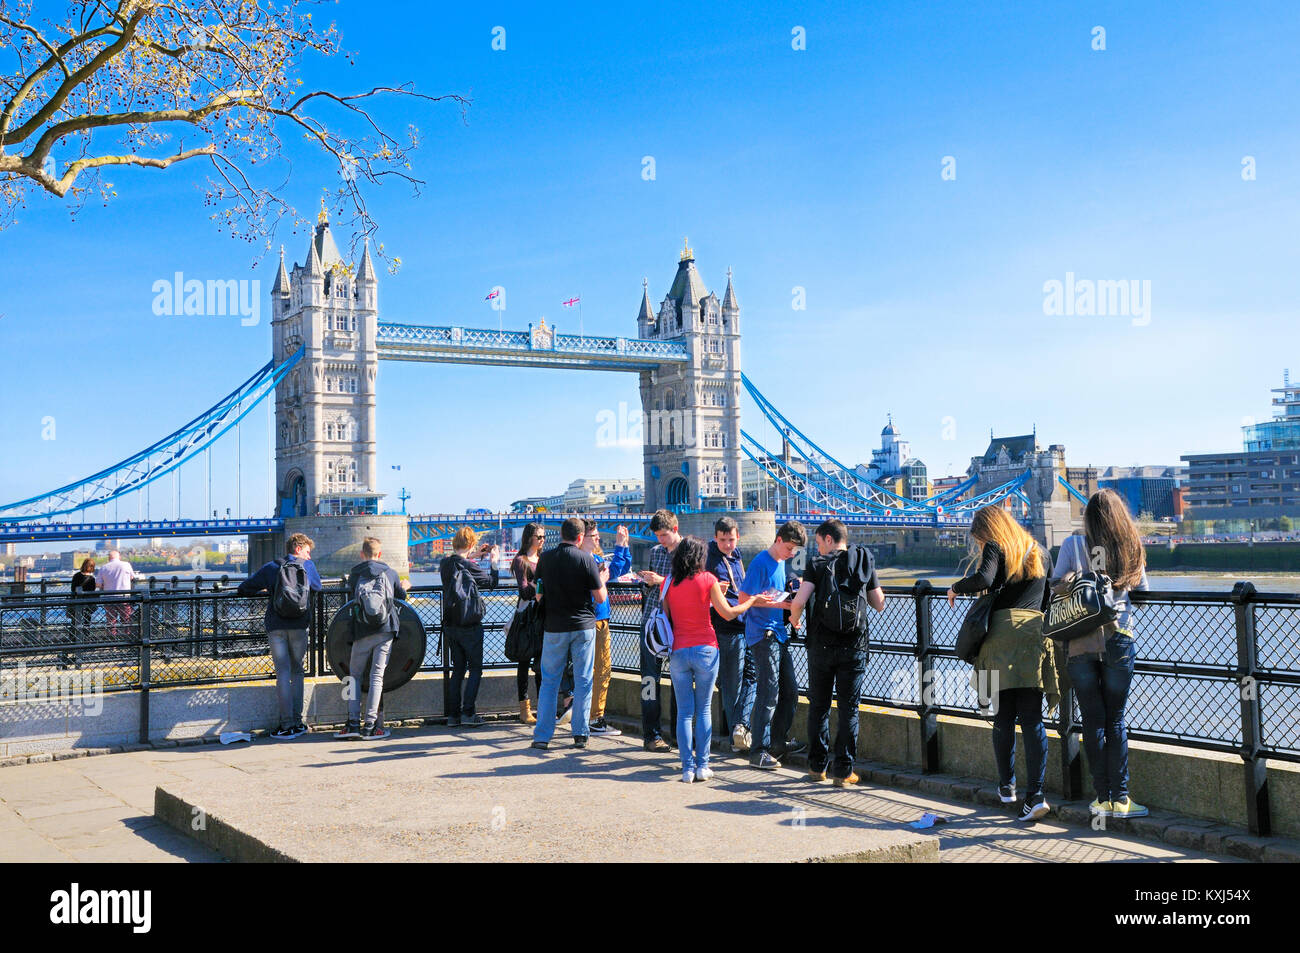 Eine Gruppe von Teenagern Sightseeing in der Hauptstadt. Blick in Richtung Tower Bridge, London, England, Großbritannien Stockfoto